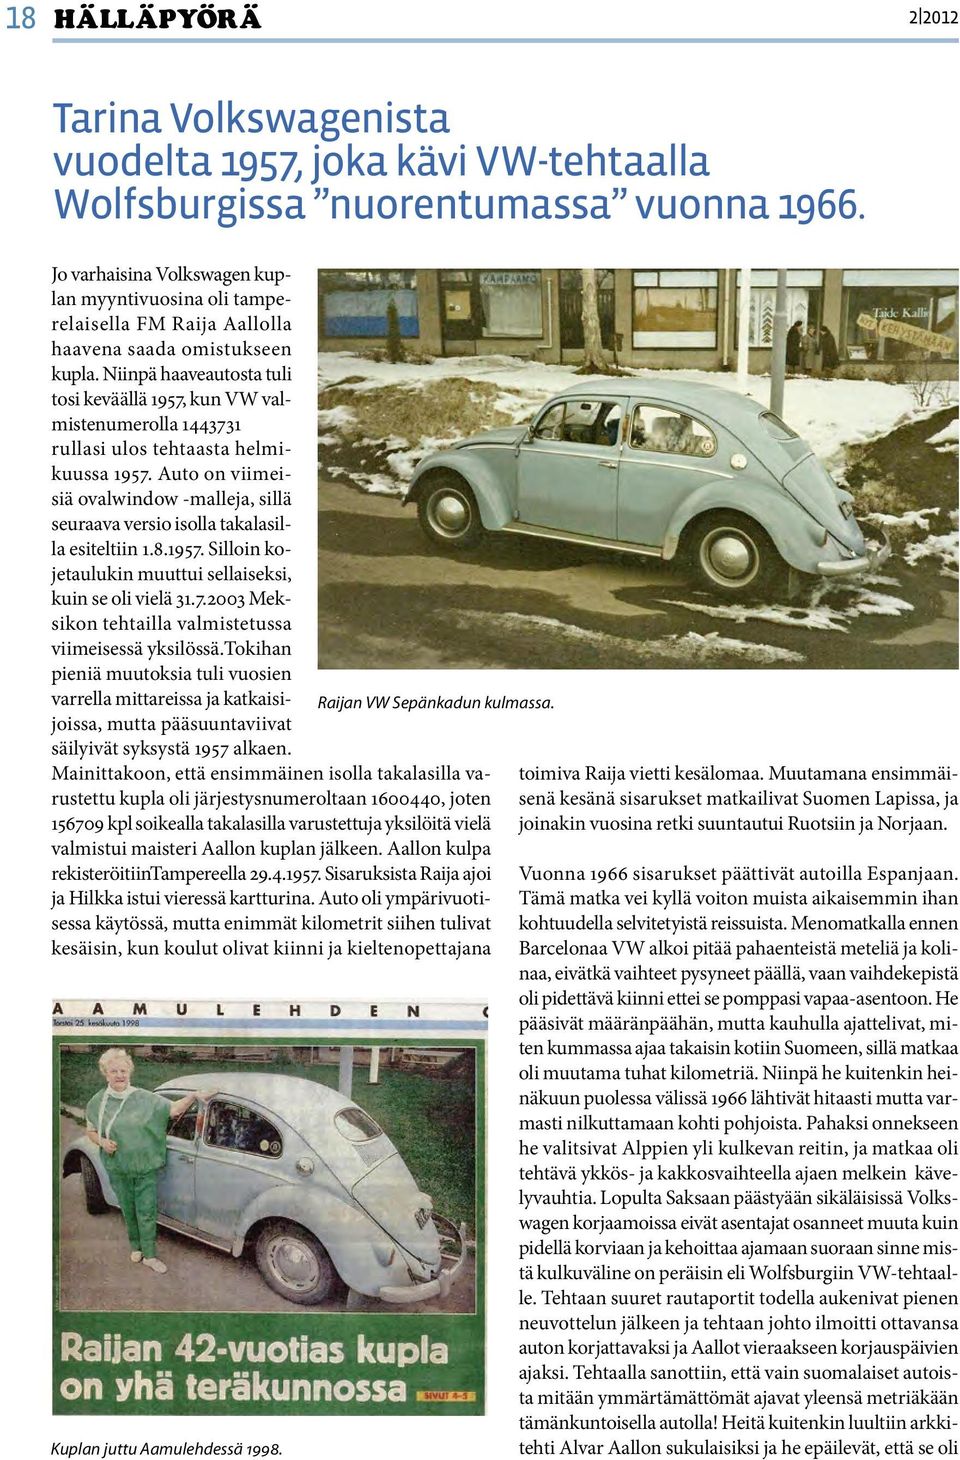 Niinpä haaveautosta tuli tosi keväällä 1957, kun VW valmistenumerolla 1443731 rullasi ulos tehtaasta helmikuussa 1957.